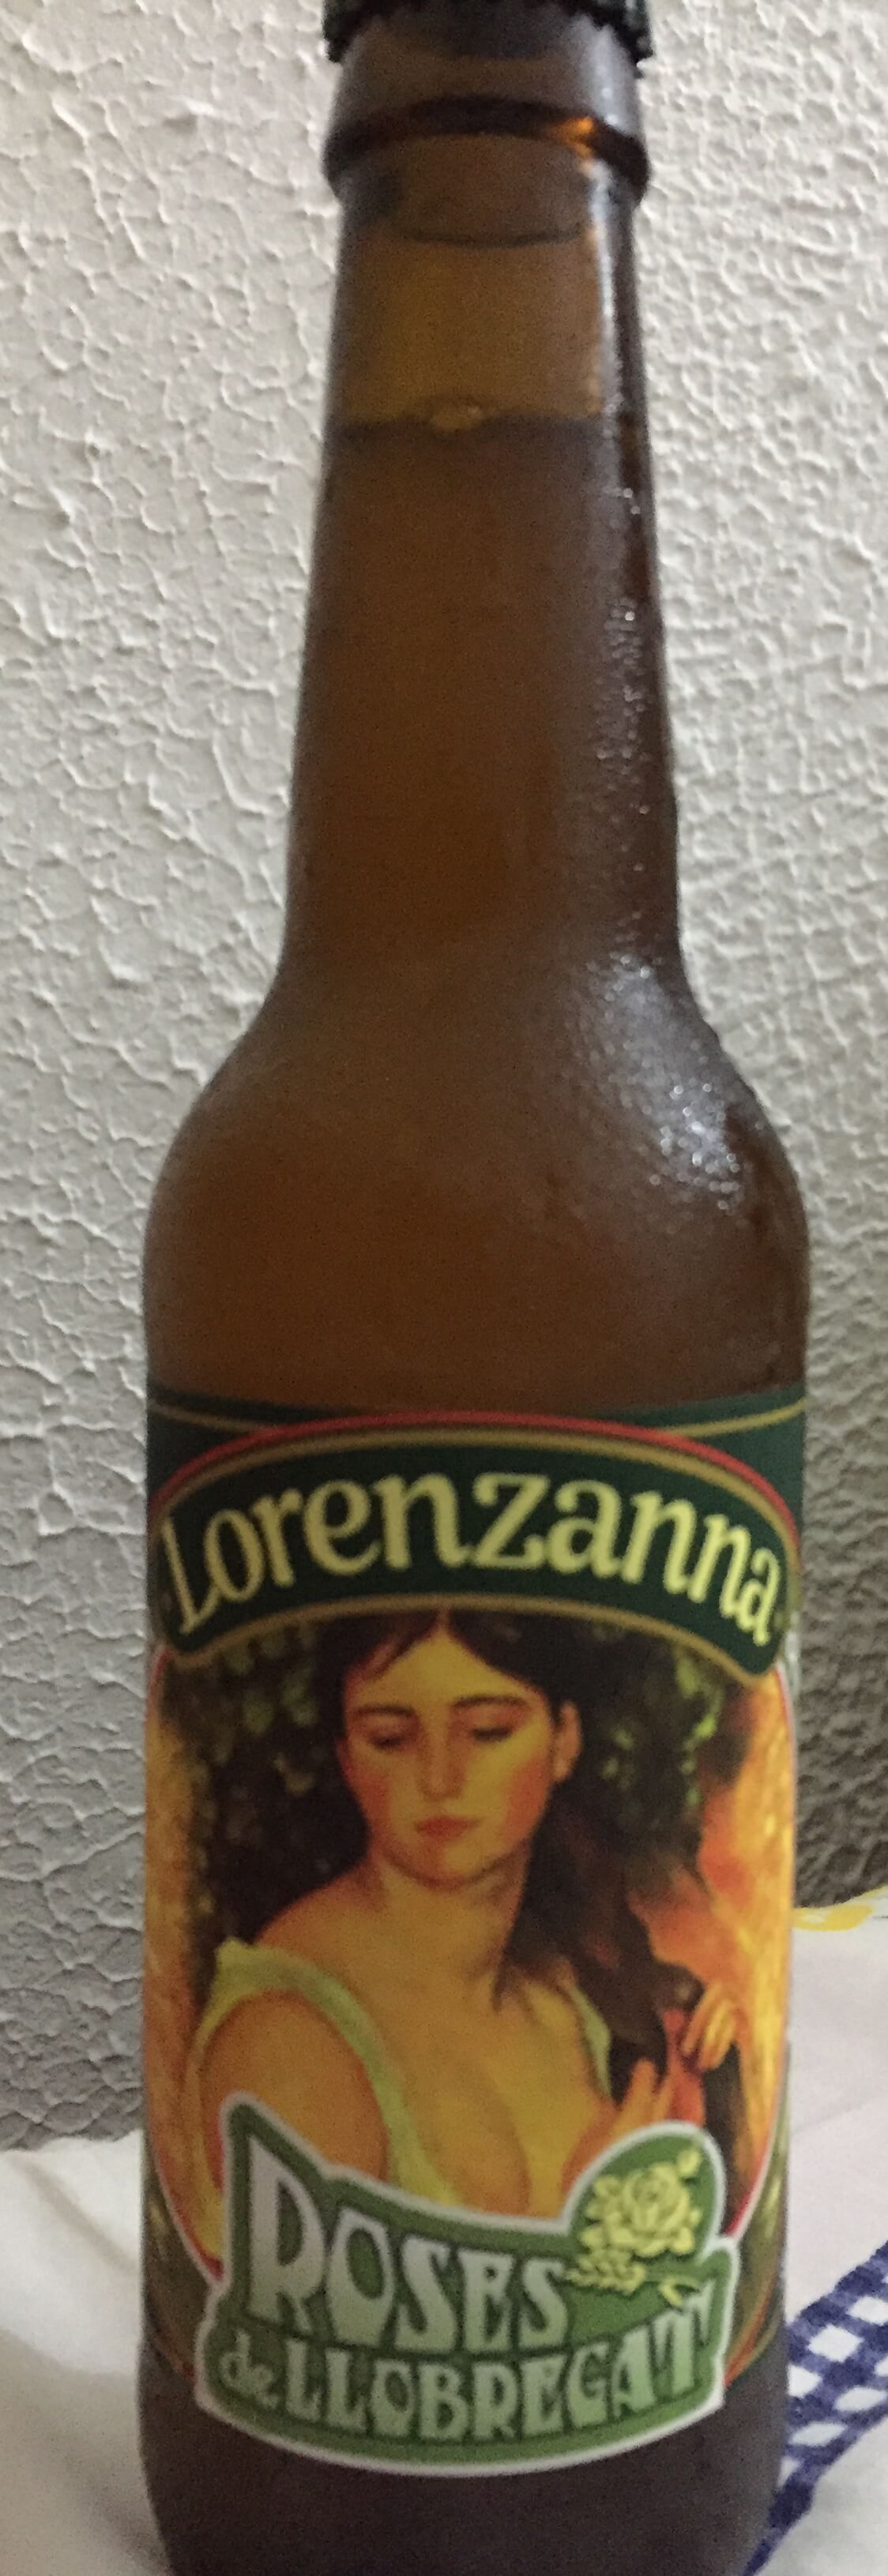 cerveza artesanal lorenzanna